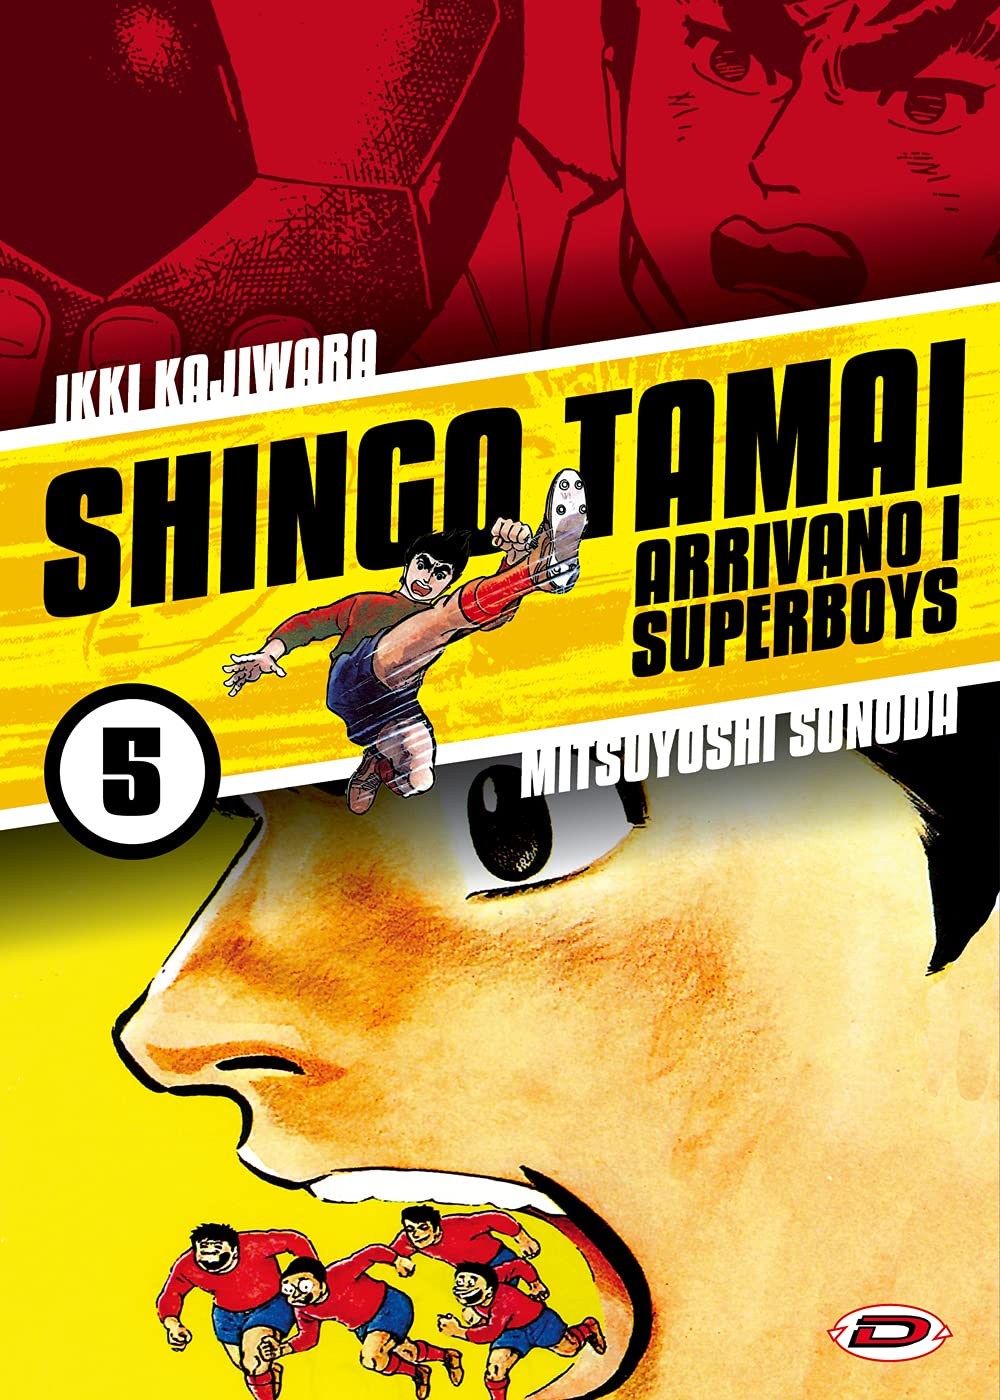 Shingo Tamai: Arrivano i Superboys 5